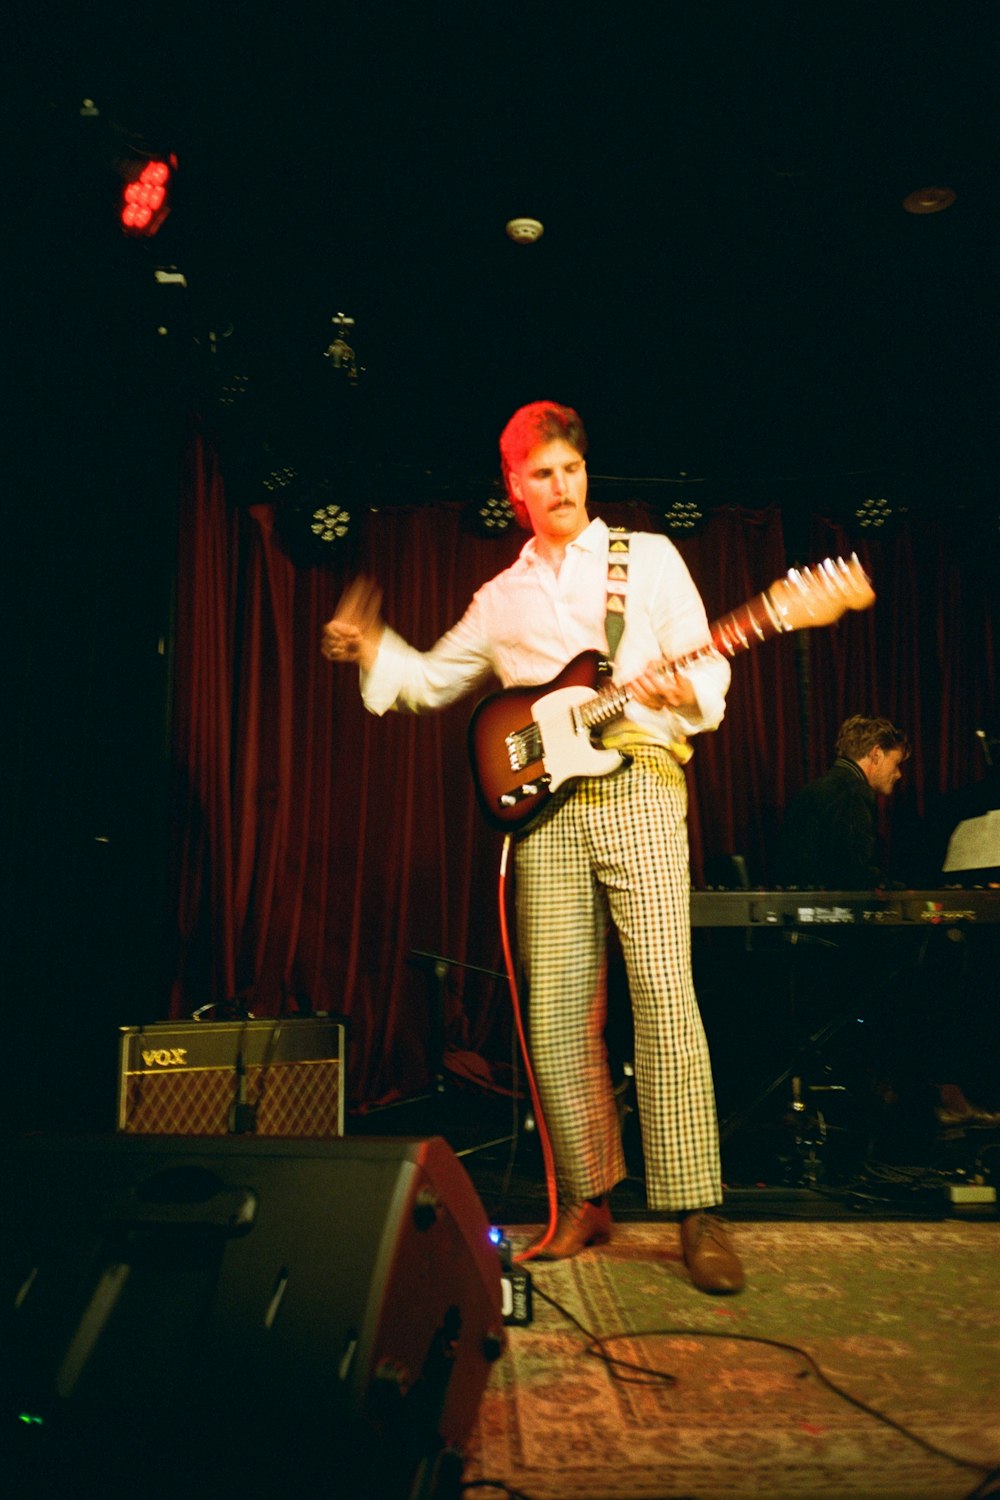 Un homme debout sur une scène avec une guitare